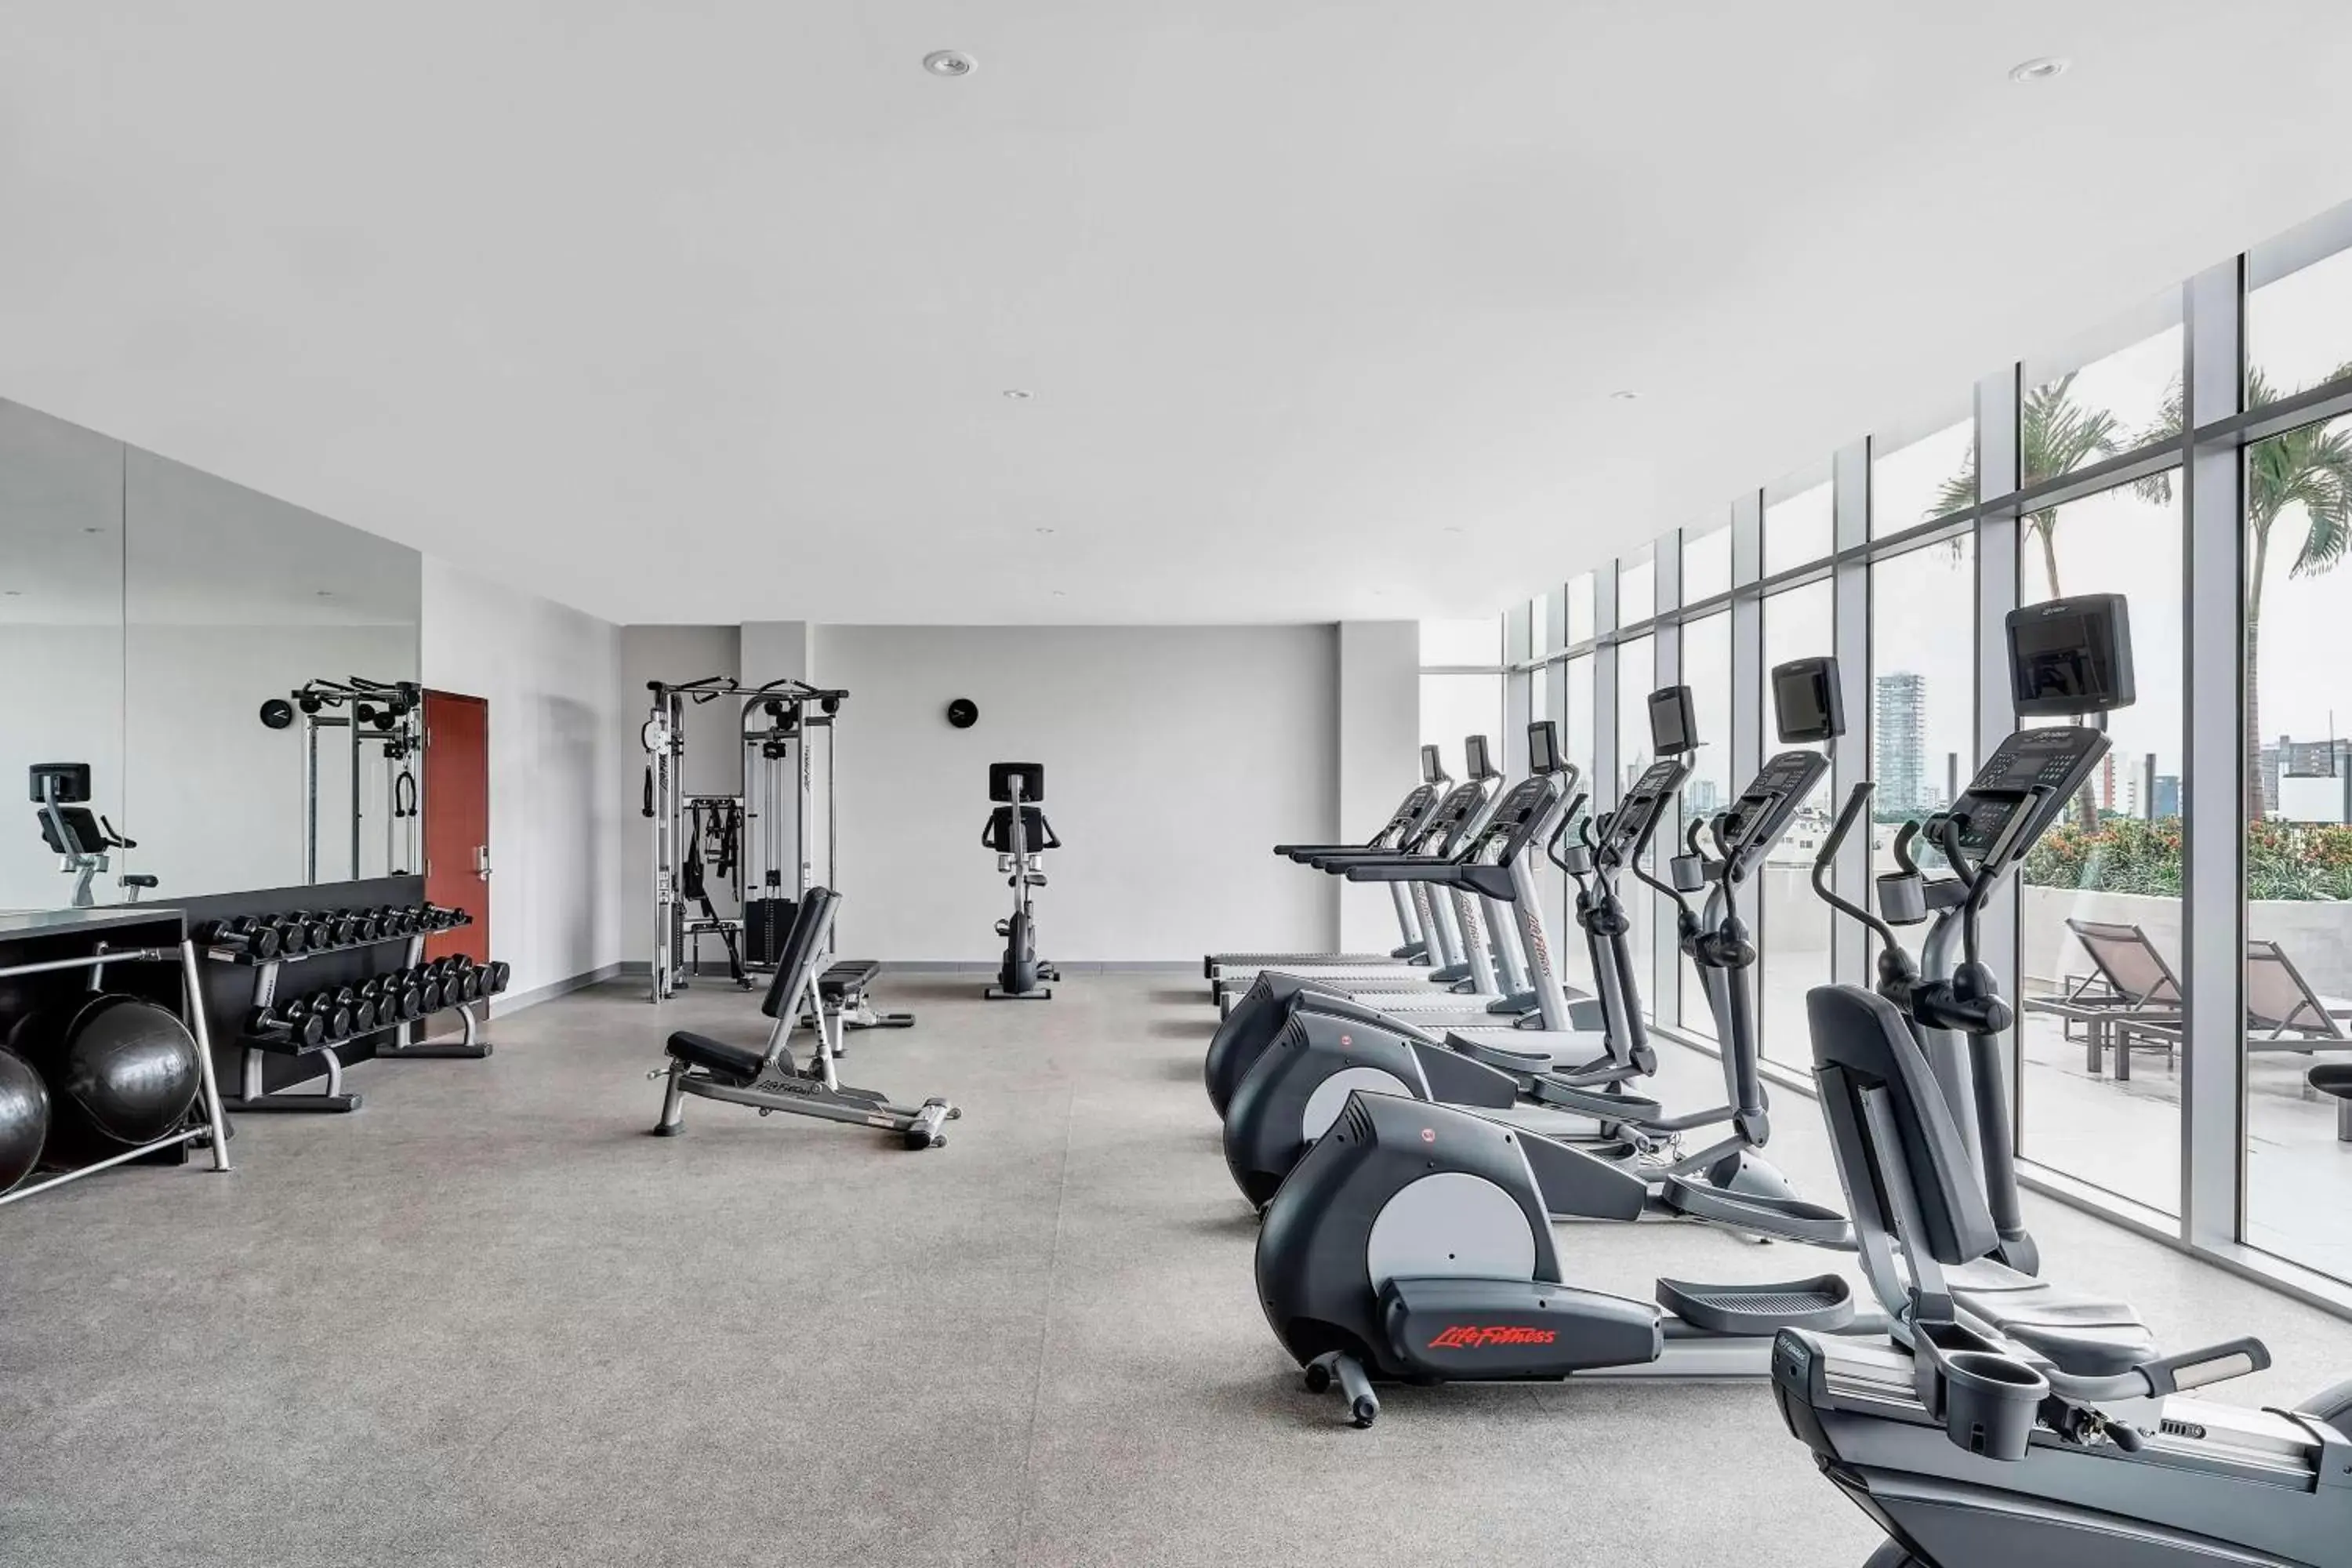 Fitness centre/facilities, Fitness Center/Facilities in Marriott Santa Cruz de la Sierra Hotel